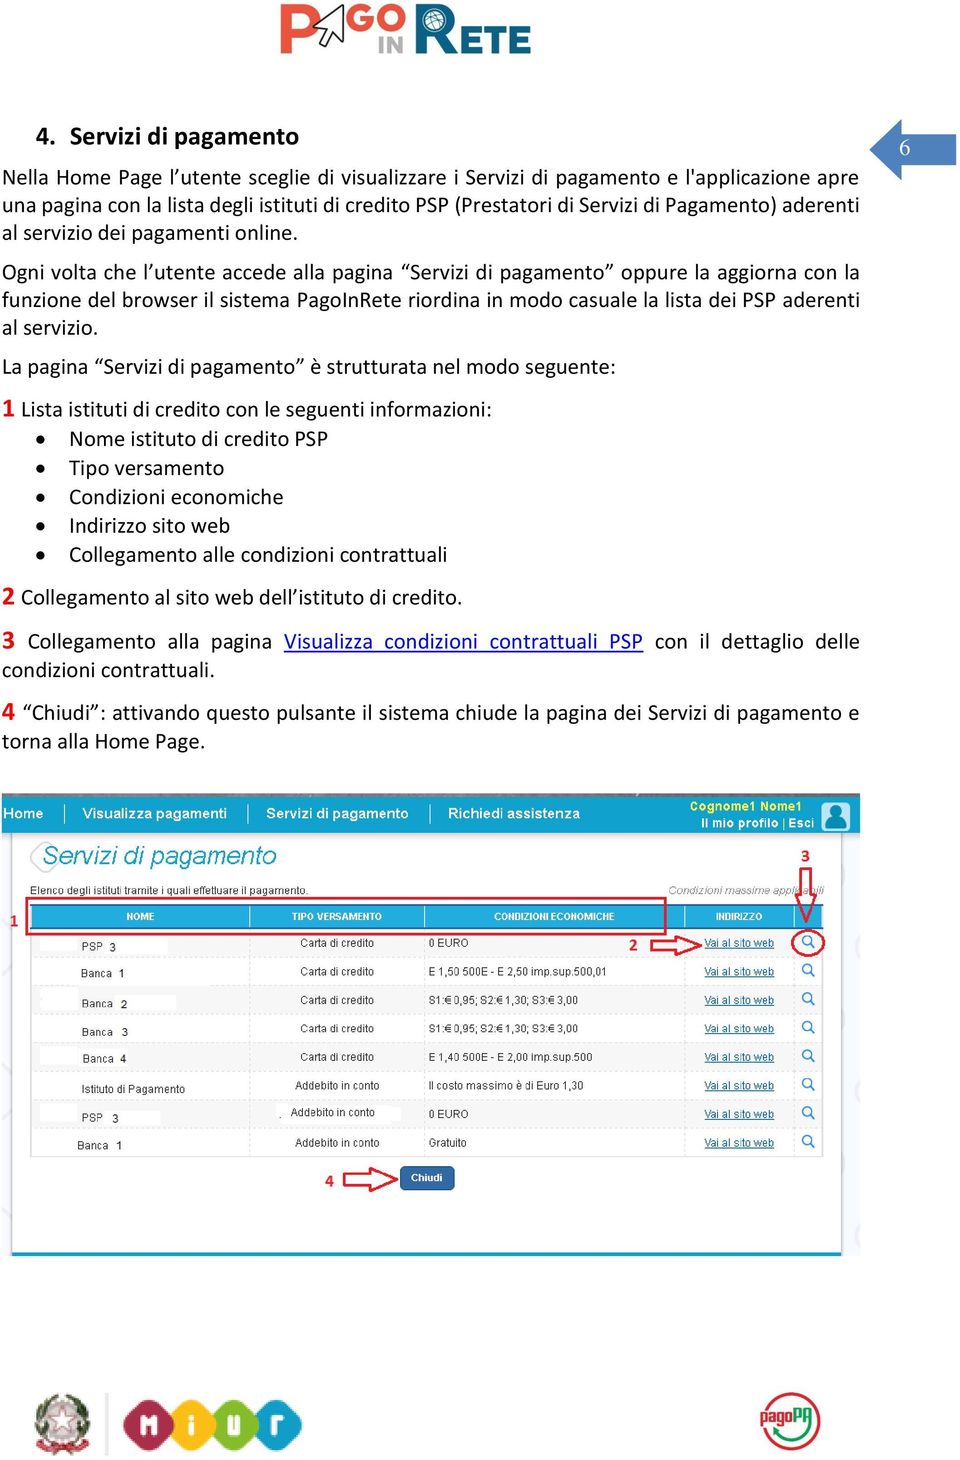 Ogni volta che l utente accede alla pagina Servizi di pagamento oppure la aggiorna con la funzione del browser il sistema PagoInRete riordina in modo casuale la lista dei PSP aderenti al servizio.